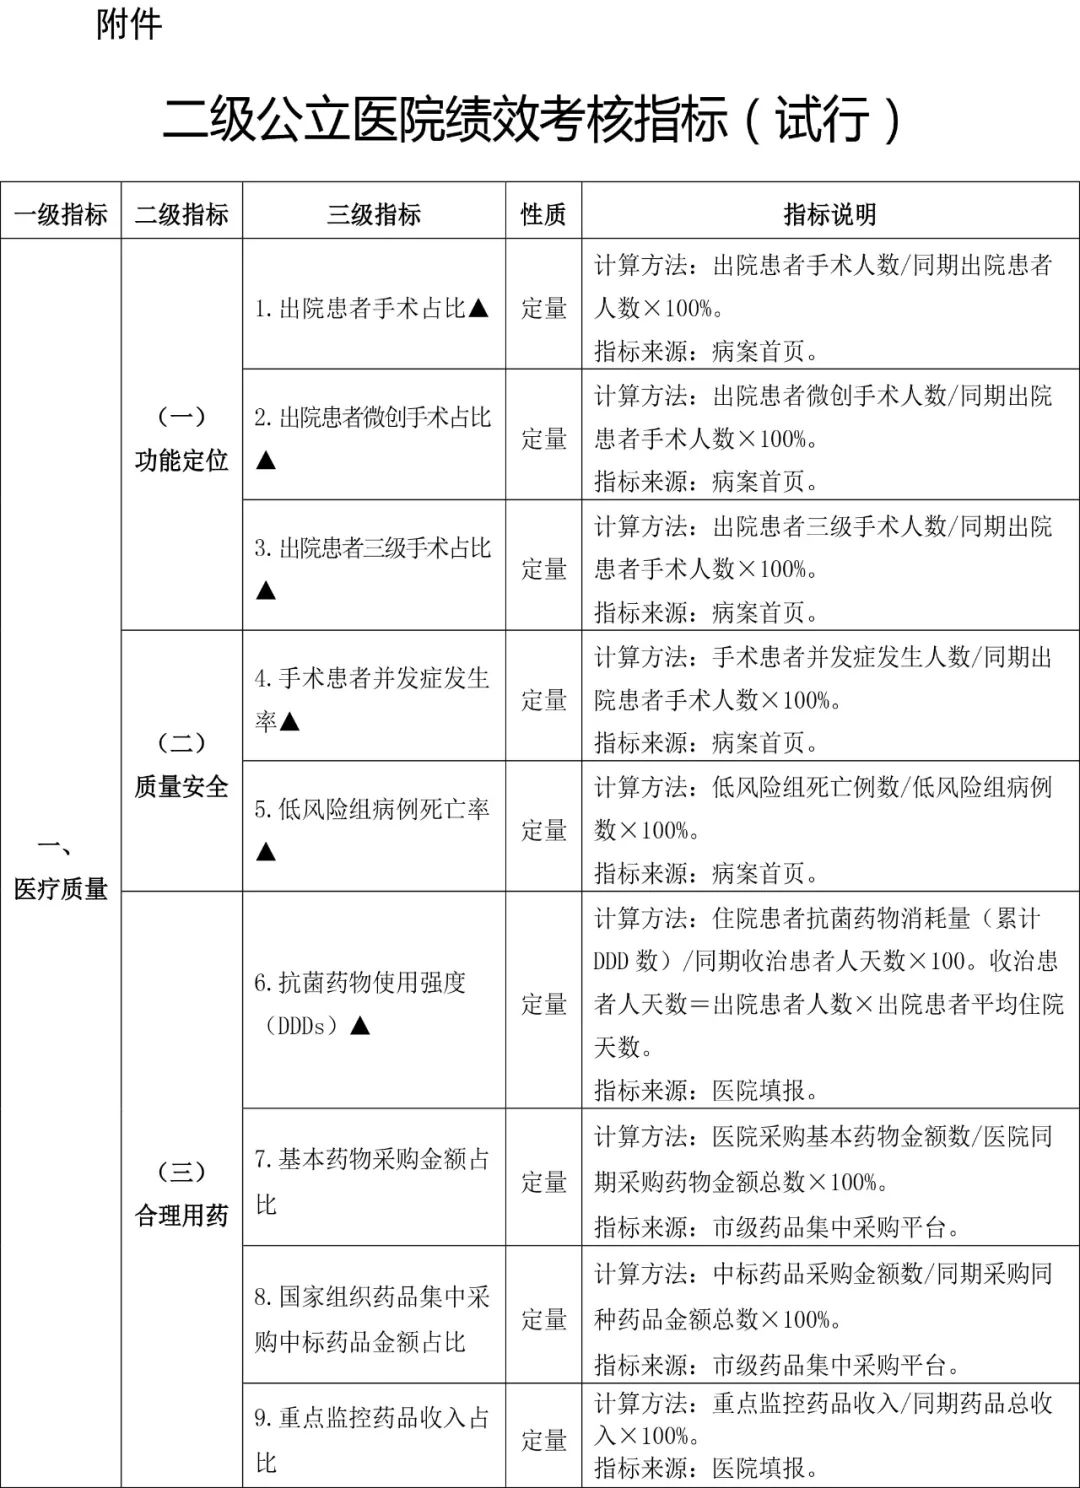 北京市二级公立医院绩效考核指标发布